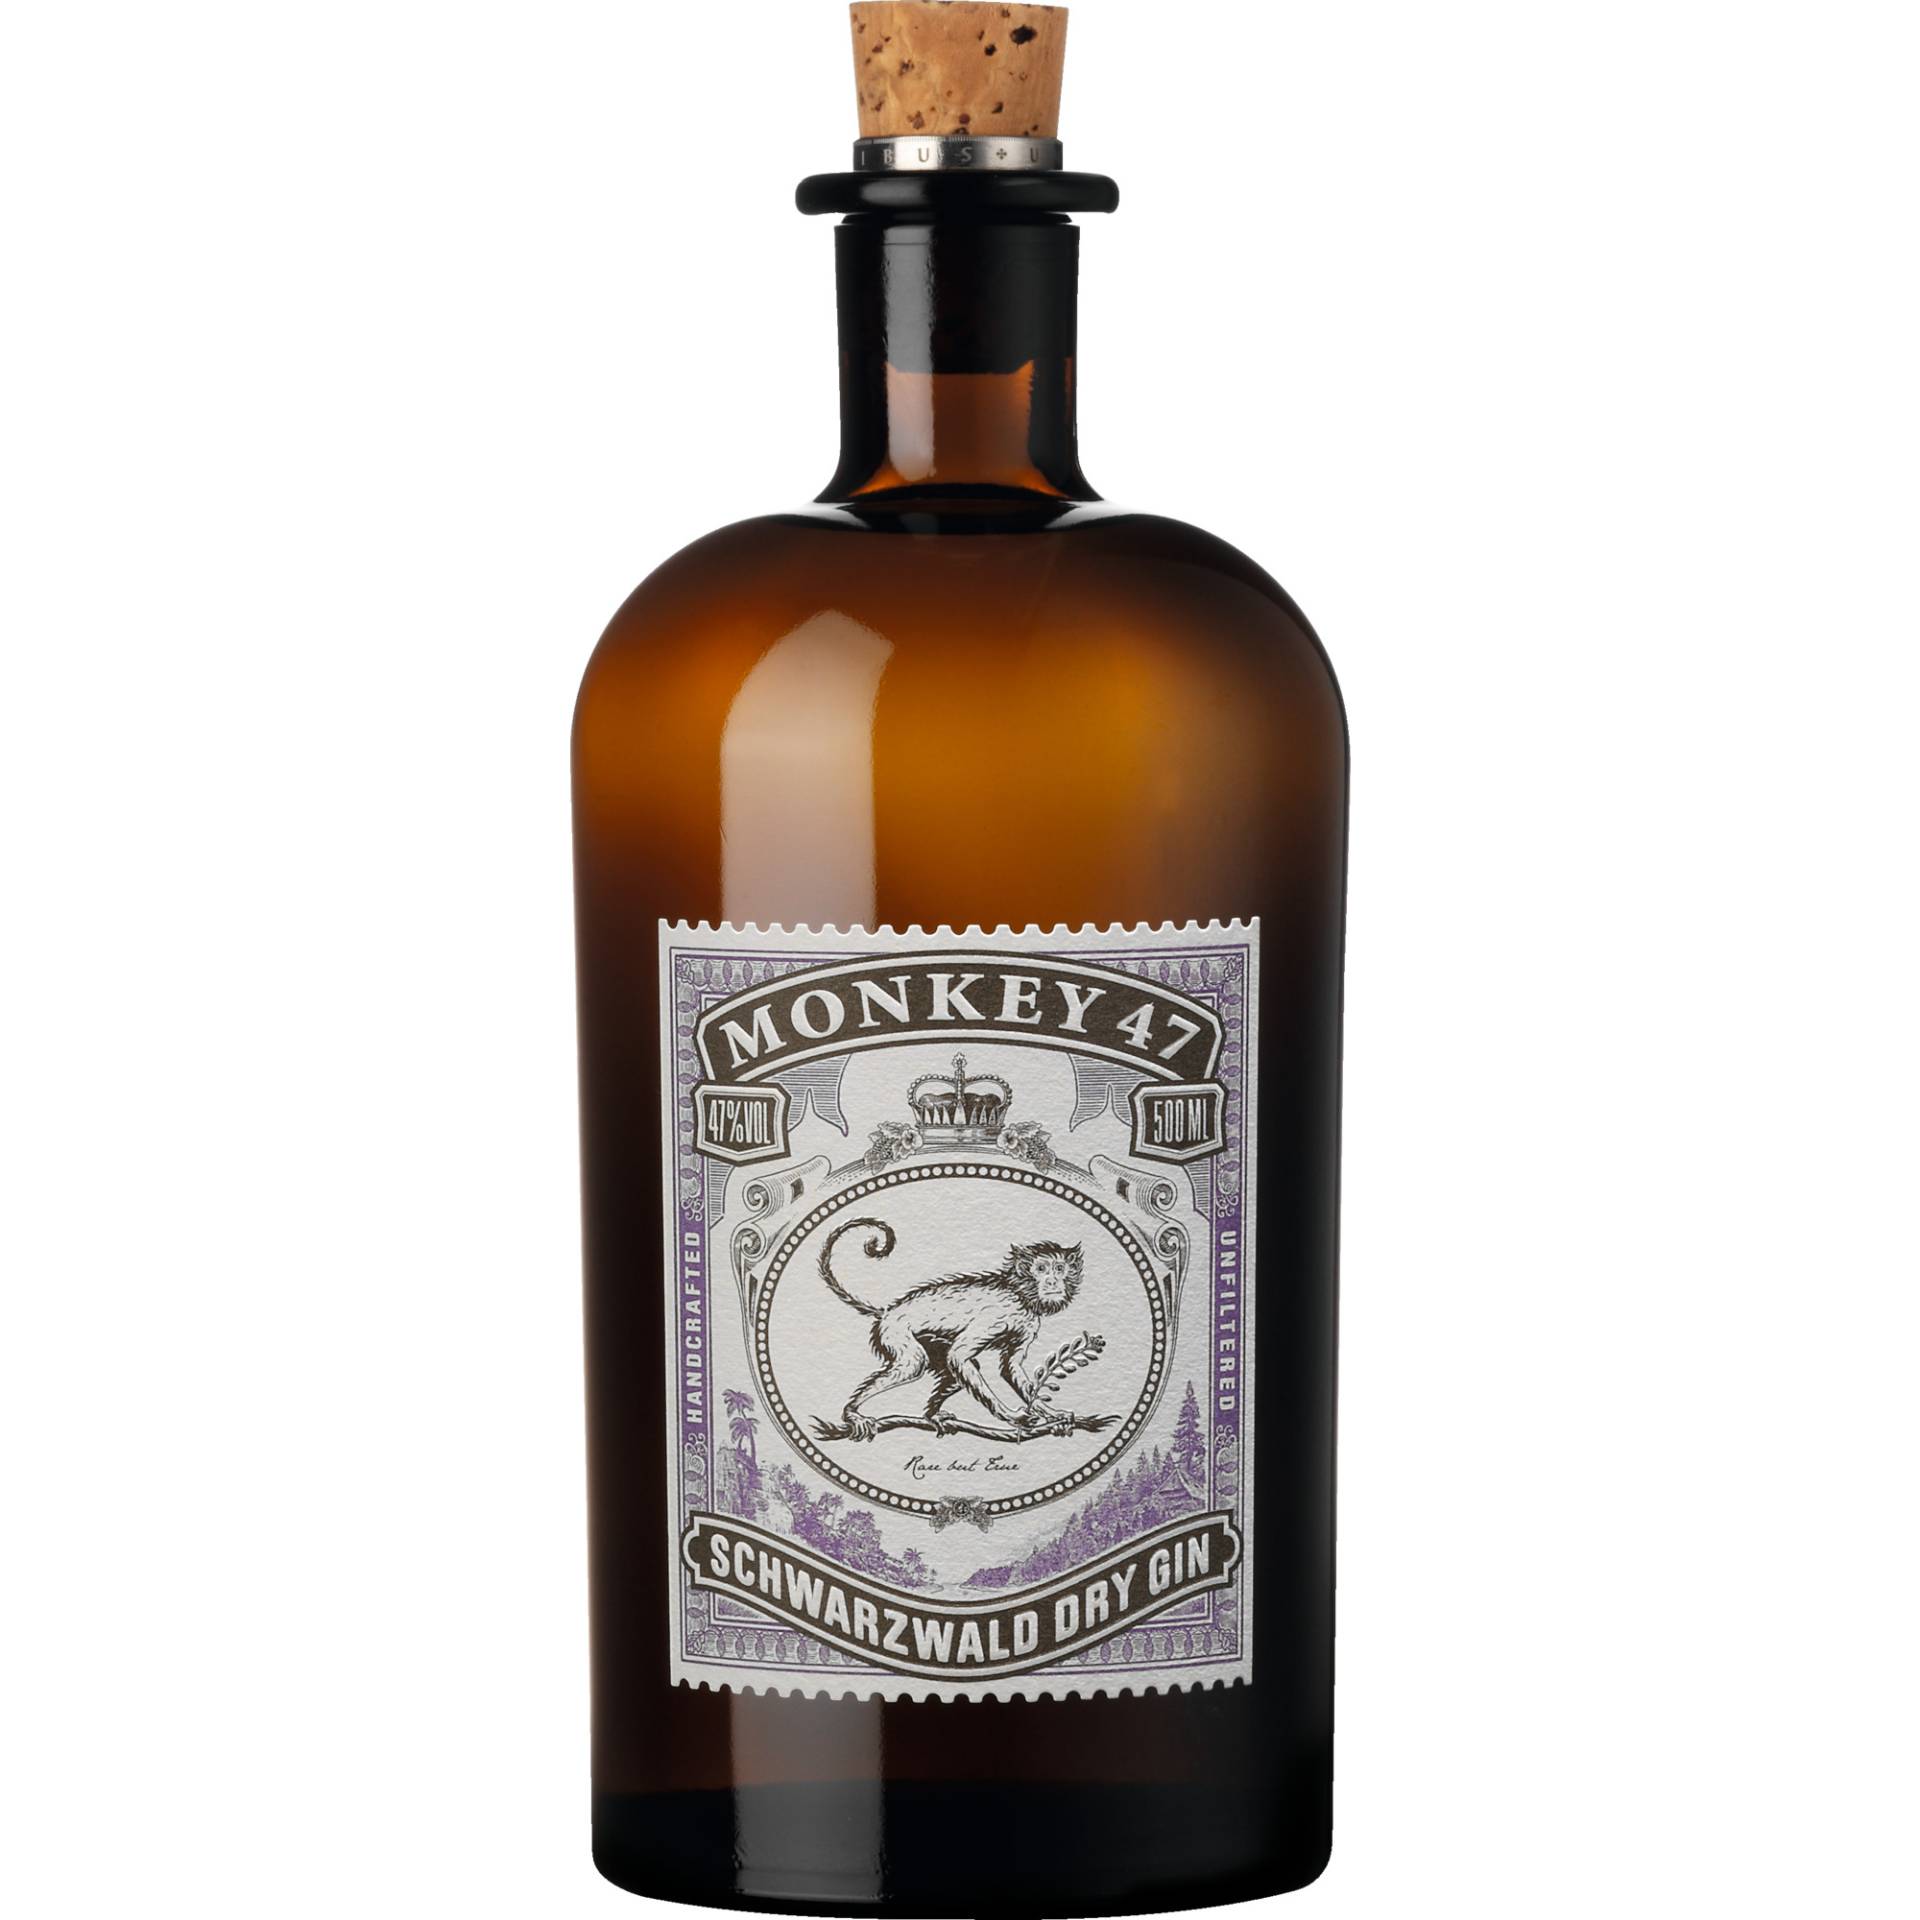 Monkey 47 Schwarzwald Dry Gin, 0,5 L, 47% Vol., Spirituosen von Black Forest Distillers, Äusserer Vogelsberg 7, D - 72290 Lossburg